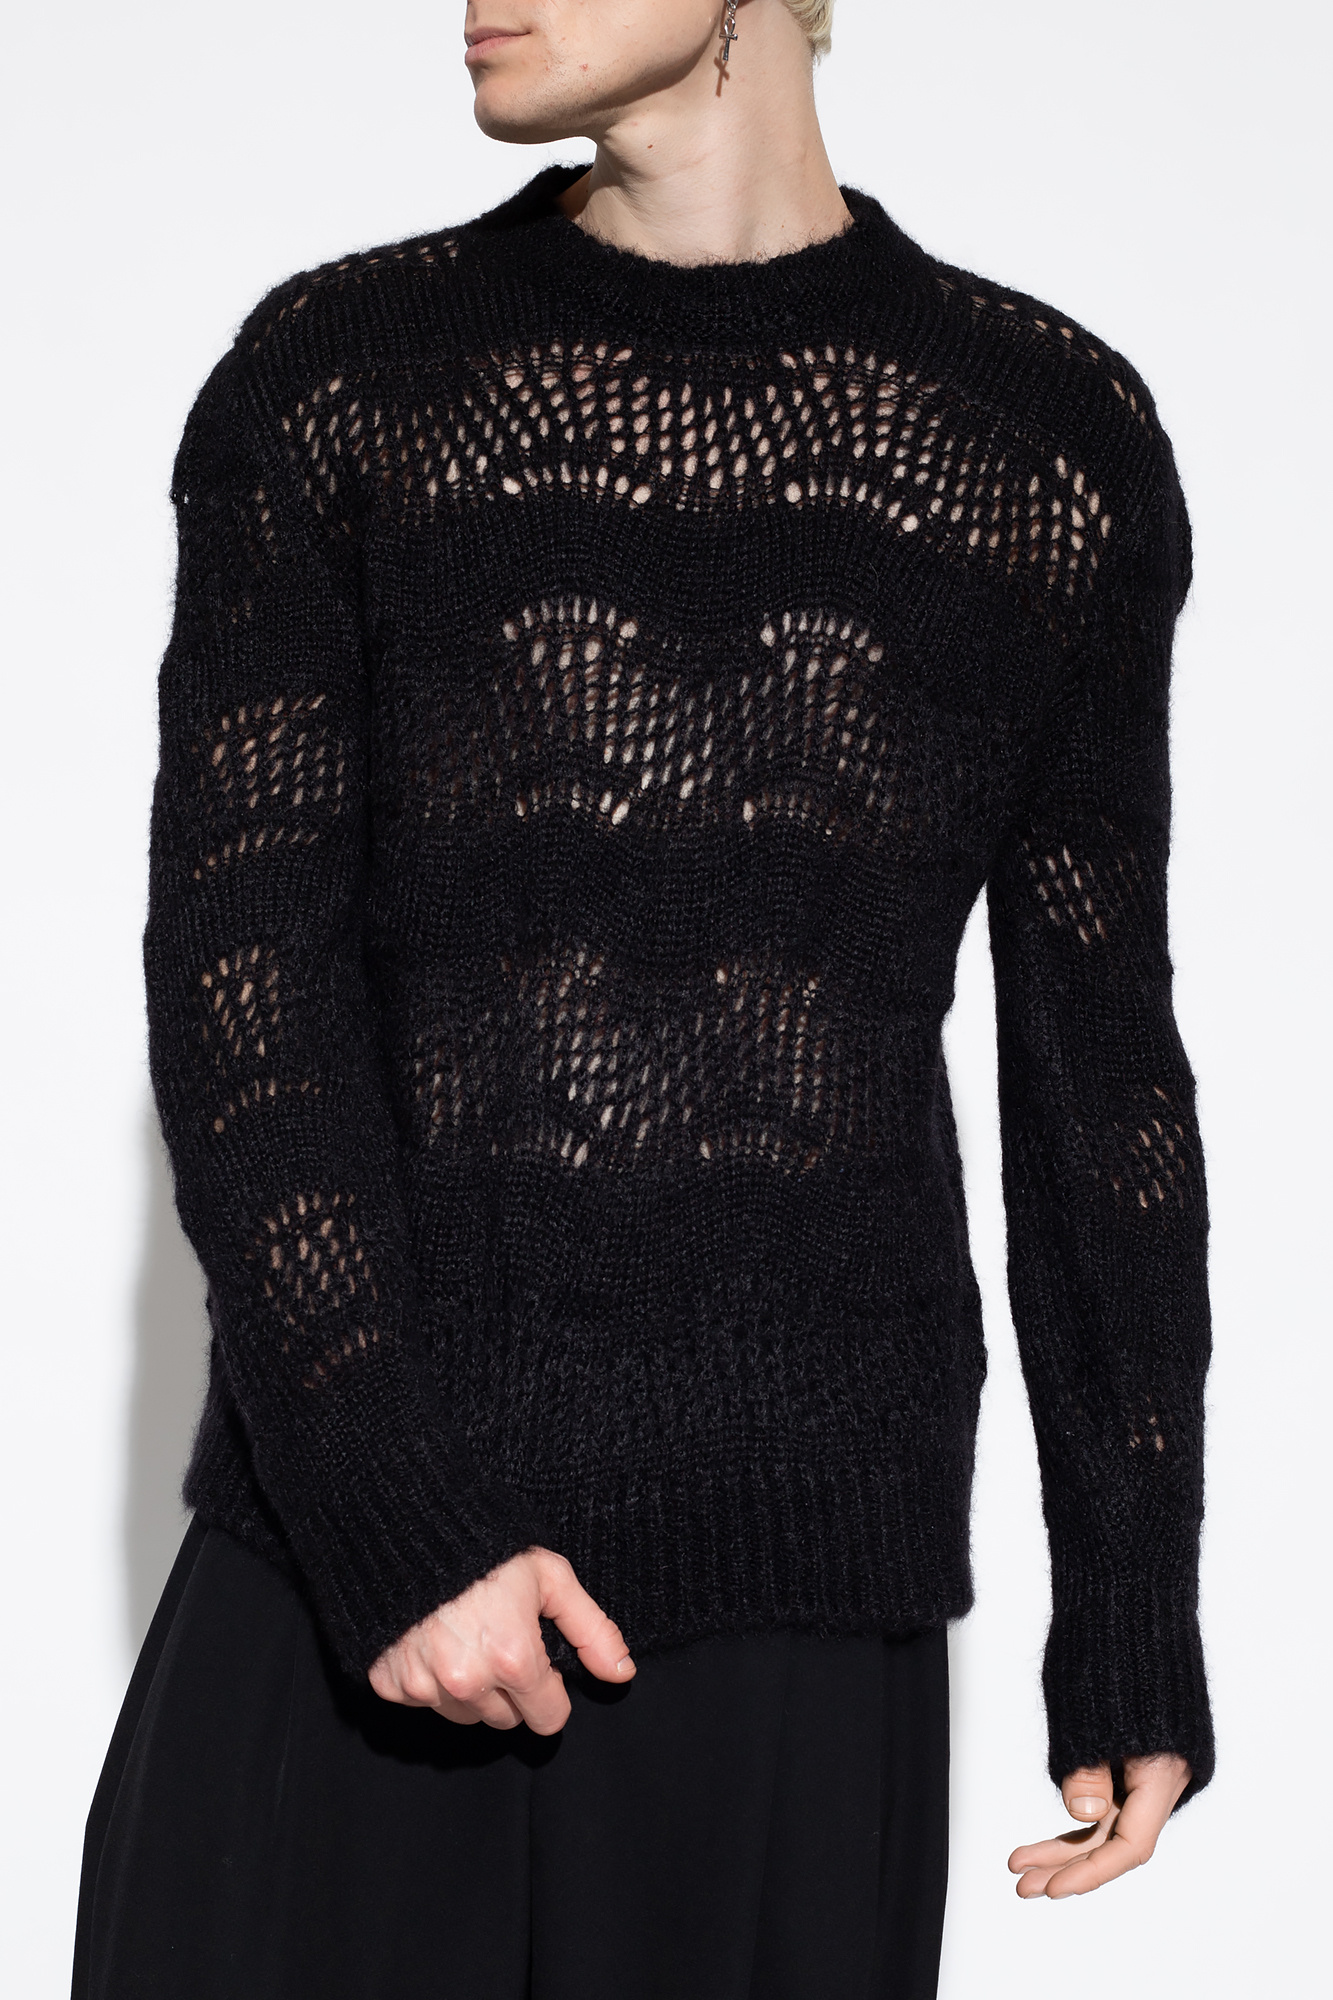 Saint Laurent Sweater with decorative knit